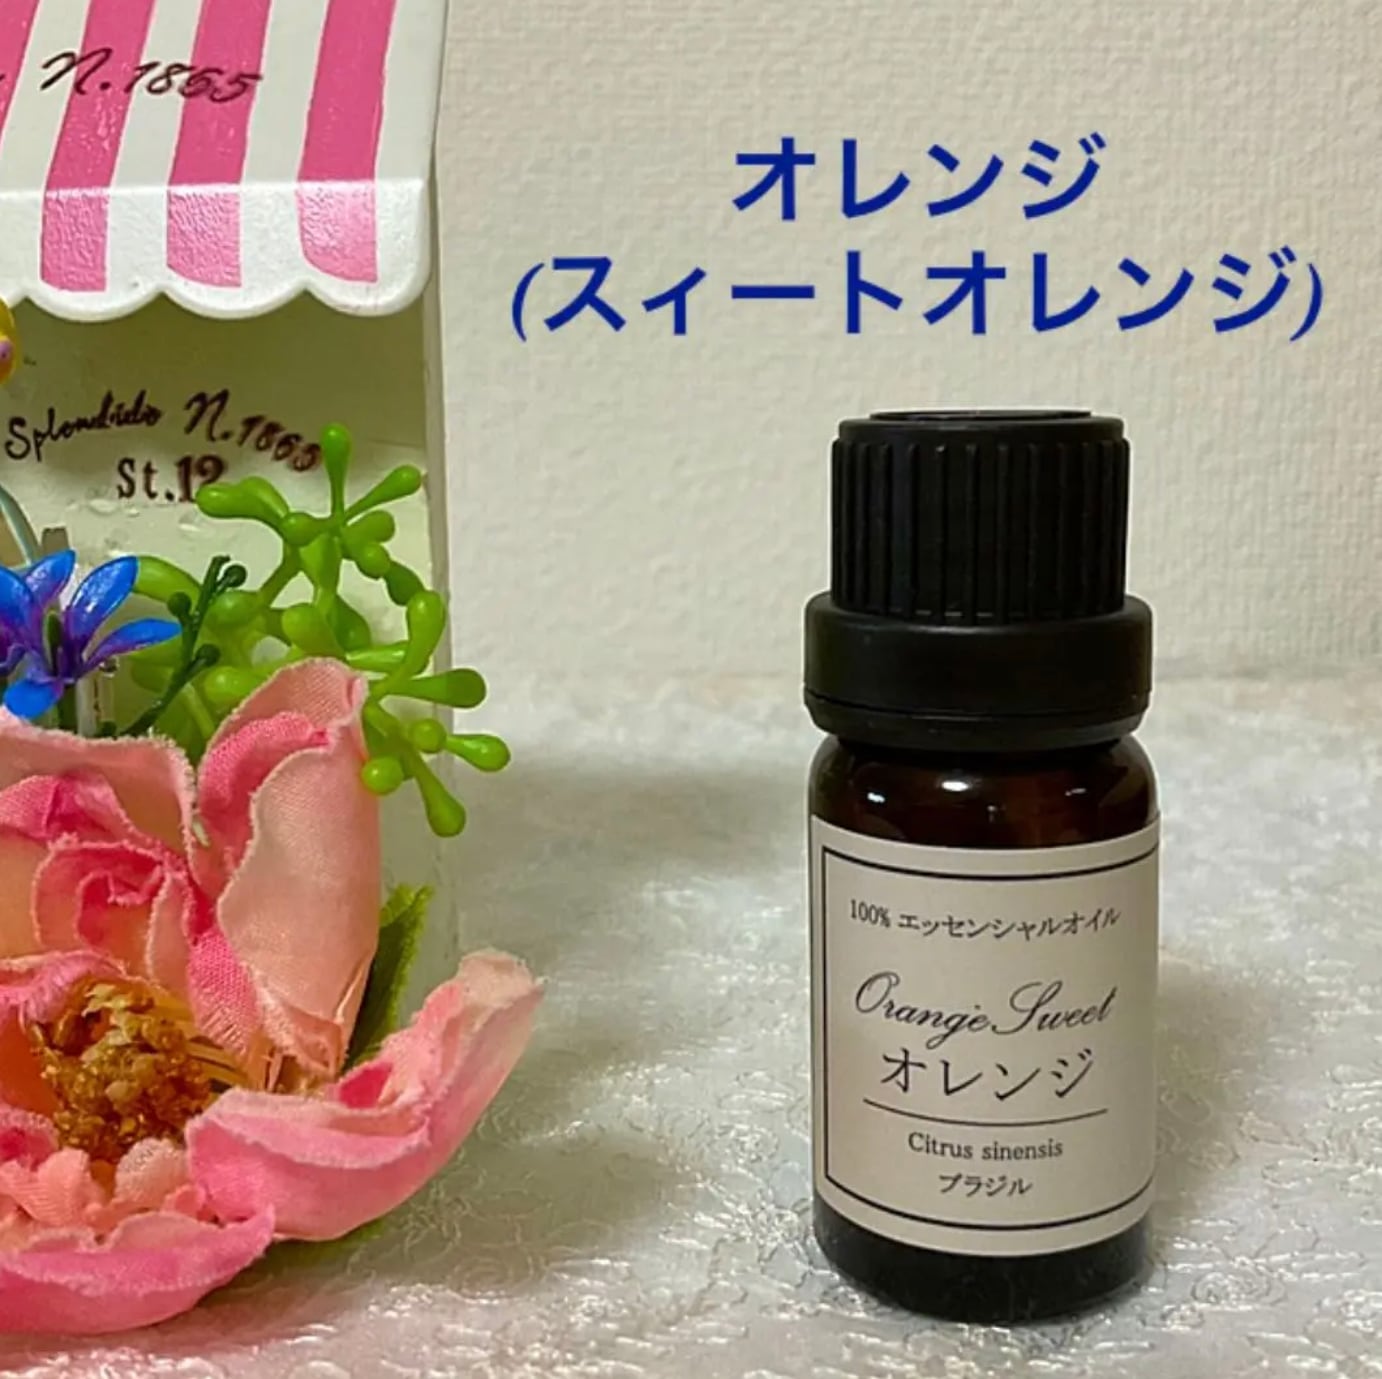 オレンジ 高品質セラピーグレード精油 | アロマショップ桜子